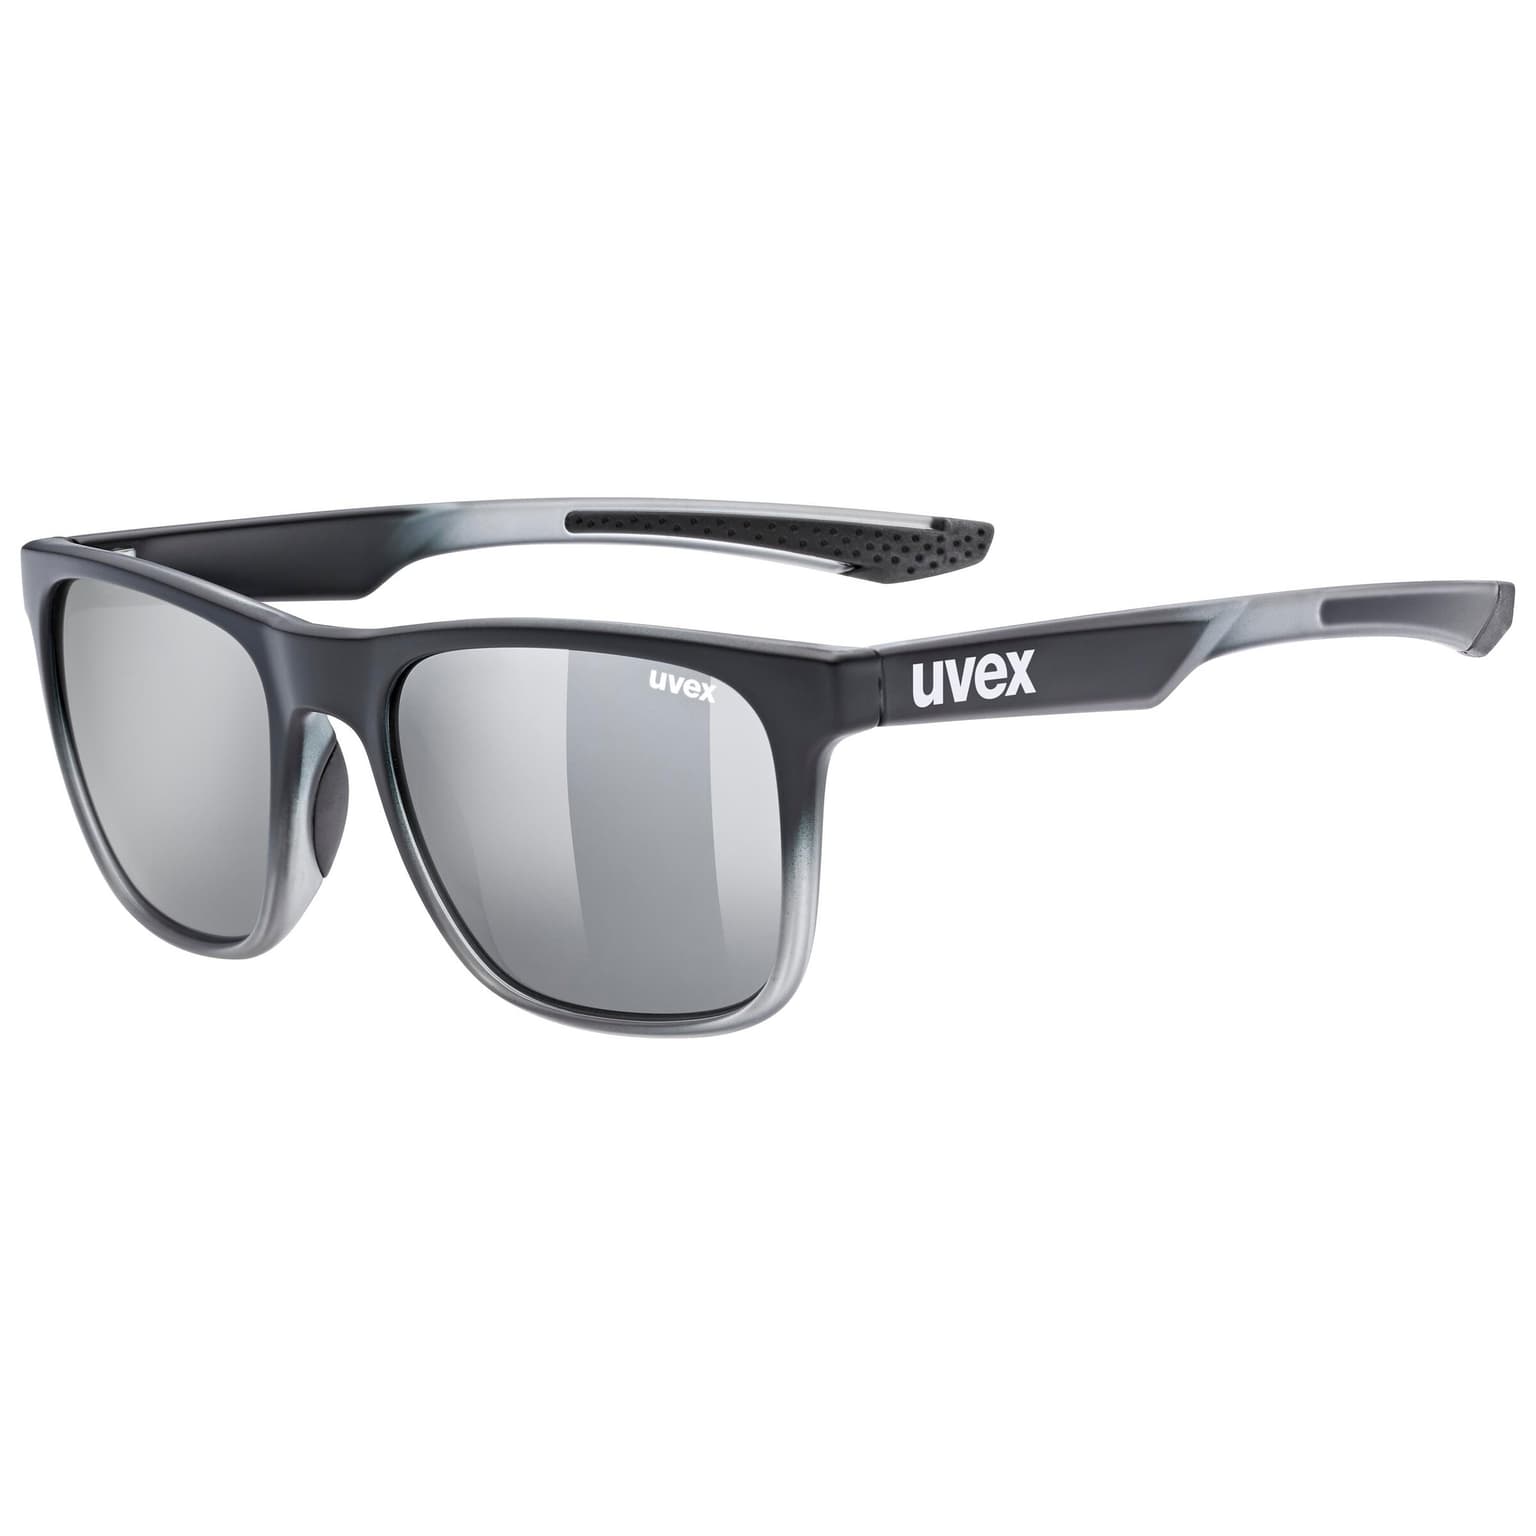 Uvex Uvex lgl 42 Sportbrille grigio 1